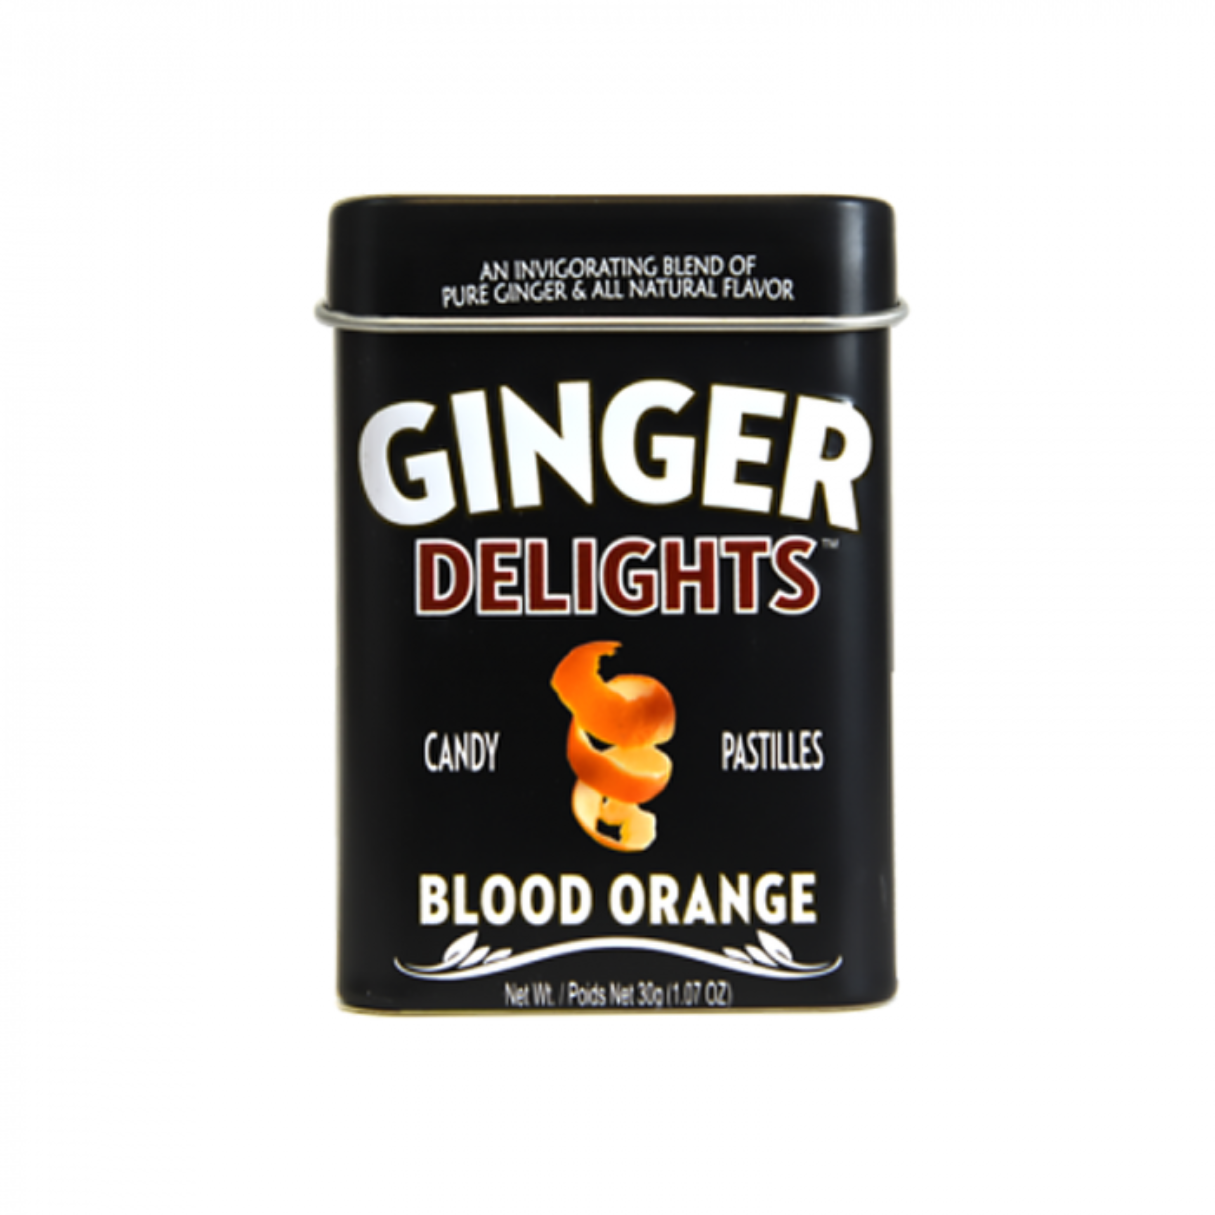 Ginger Delights Blood Orange Candy Pastilles 1.07oz - 144ct